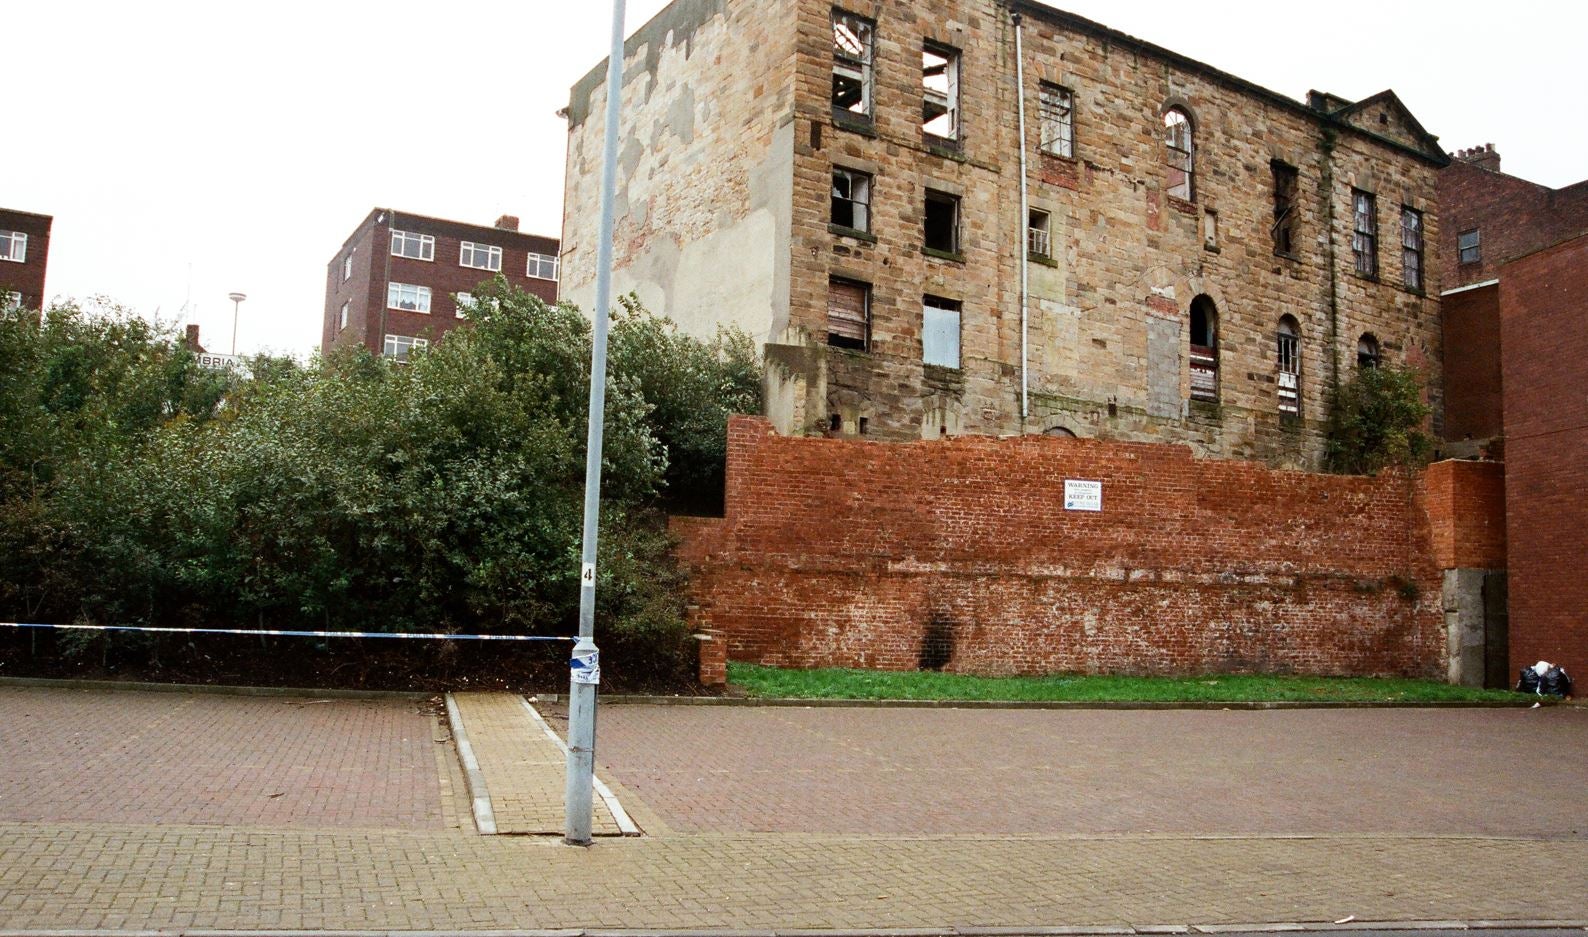 The Old Exchange Building in Hendon, Sunderland, where Nikki Allan was murdered